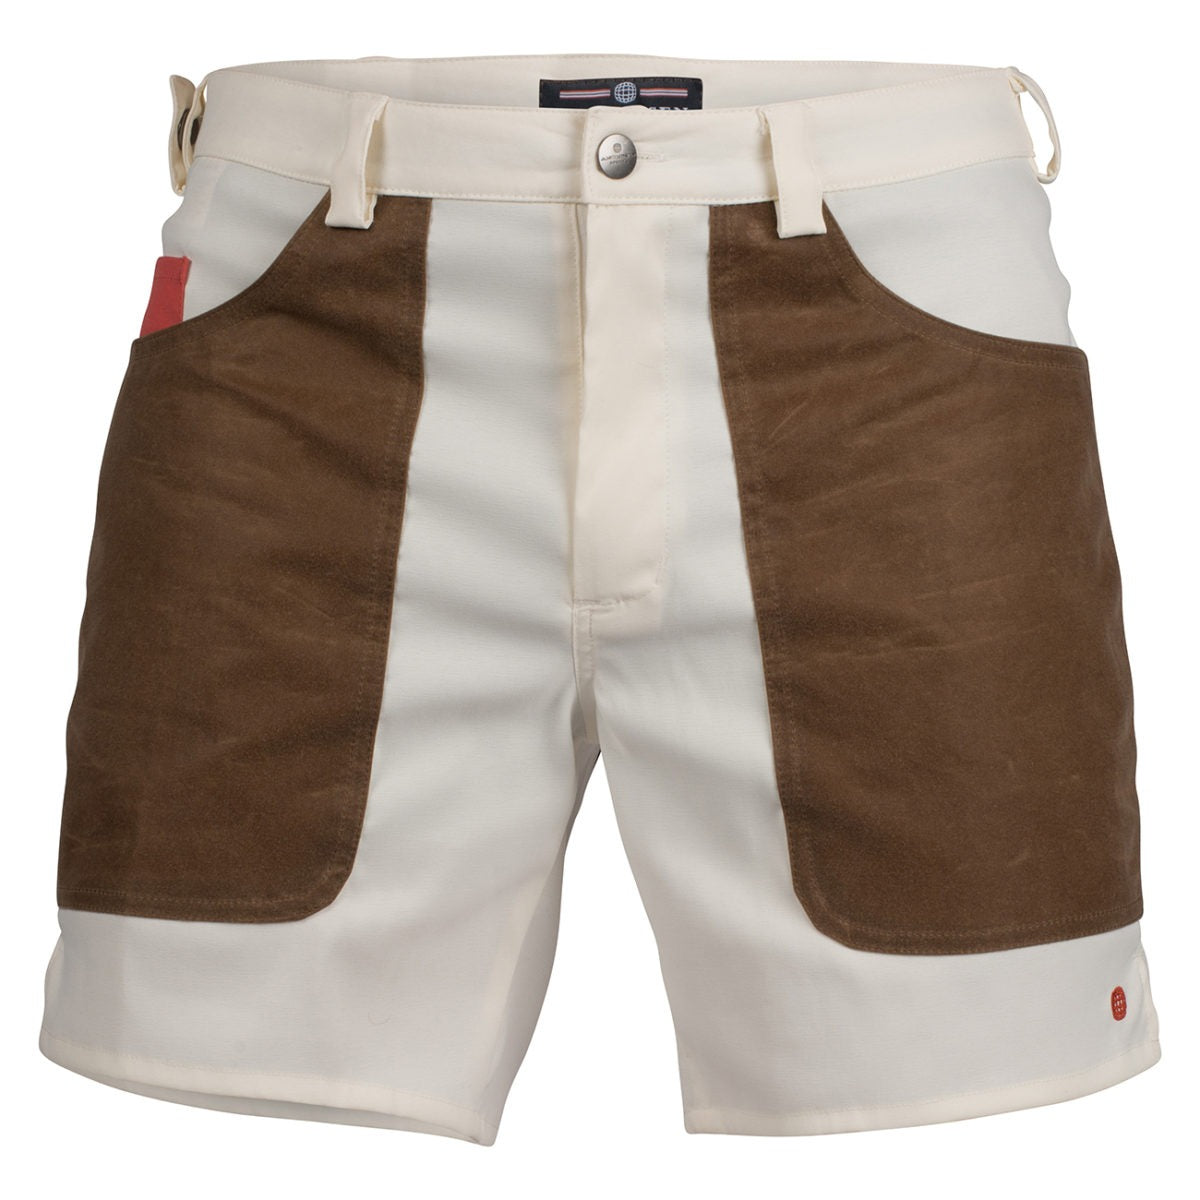 Amundsen 7incher Field Shorts - Offwhite/Tan